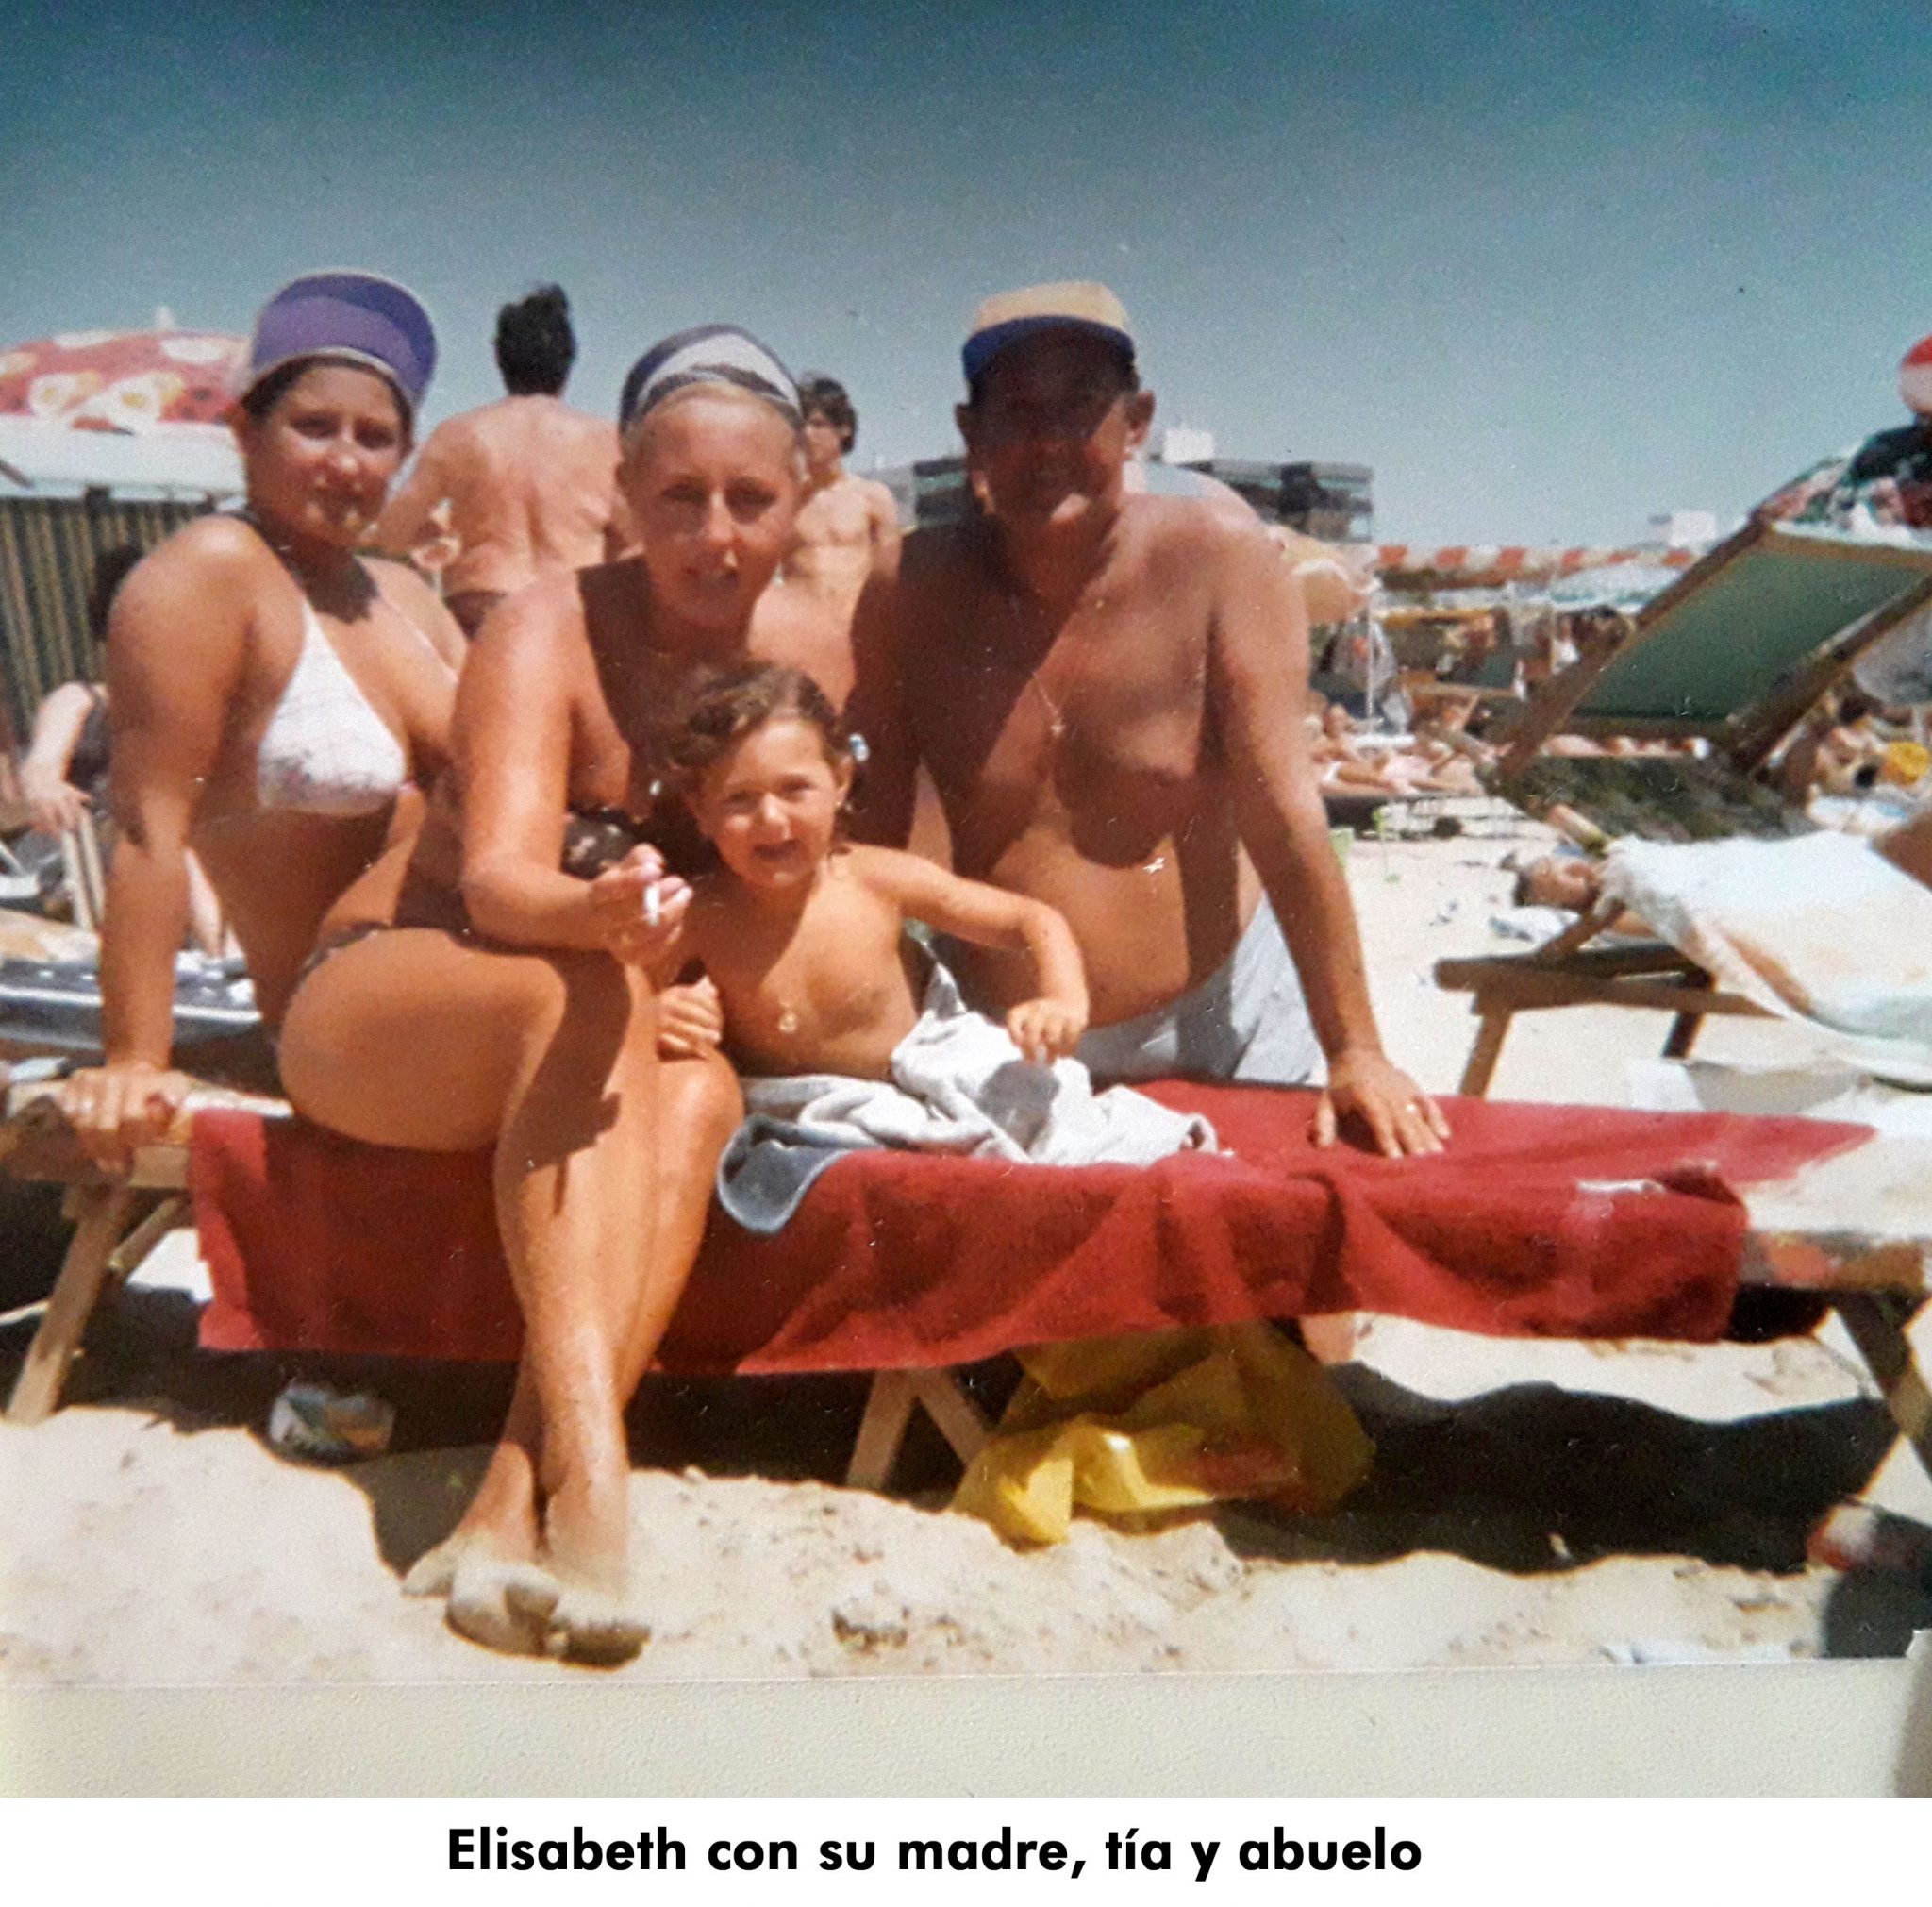 11. Elisabeth con madre, tia y abuelo en la playa